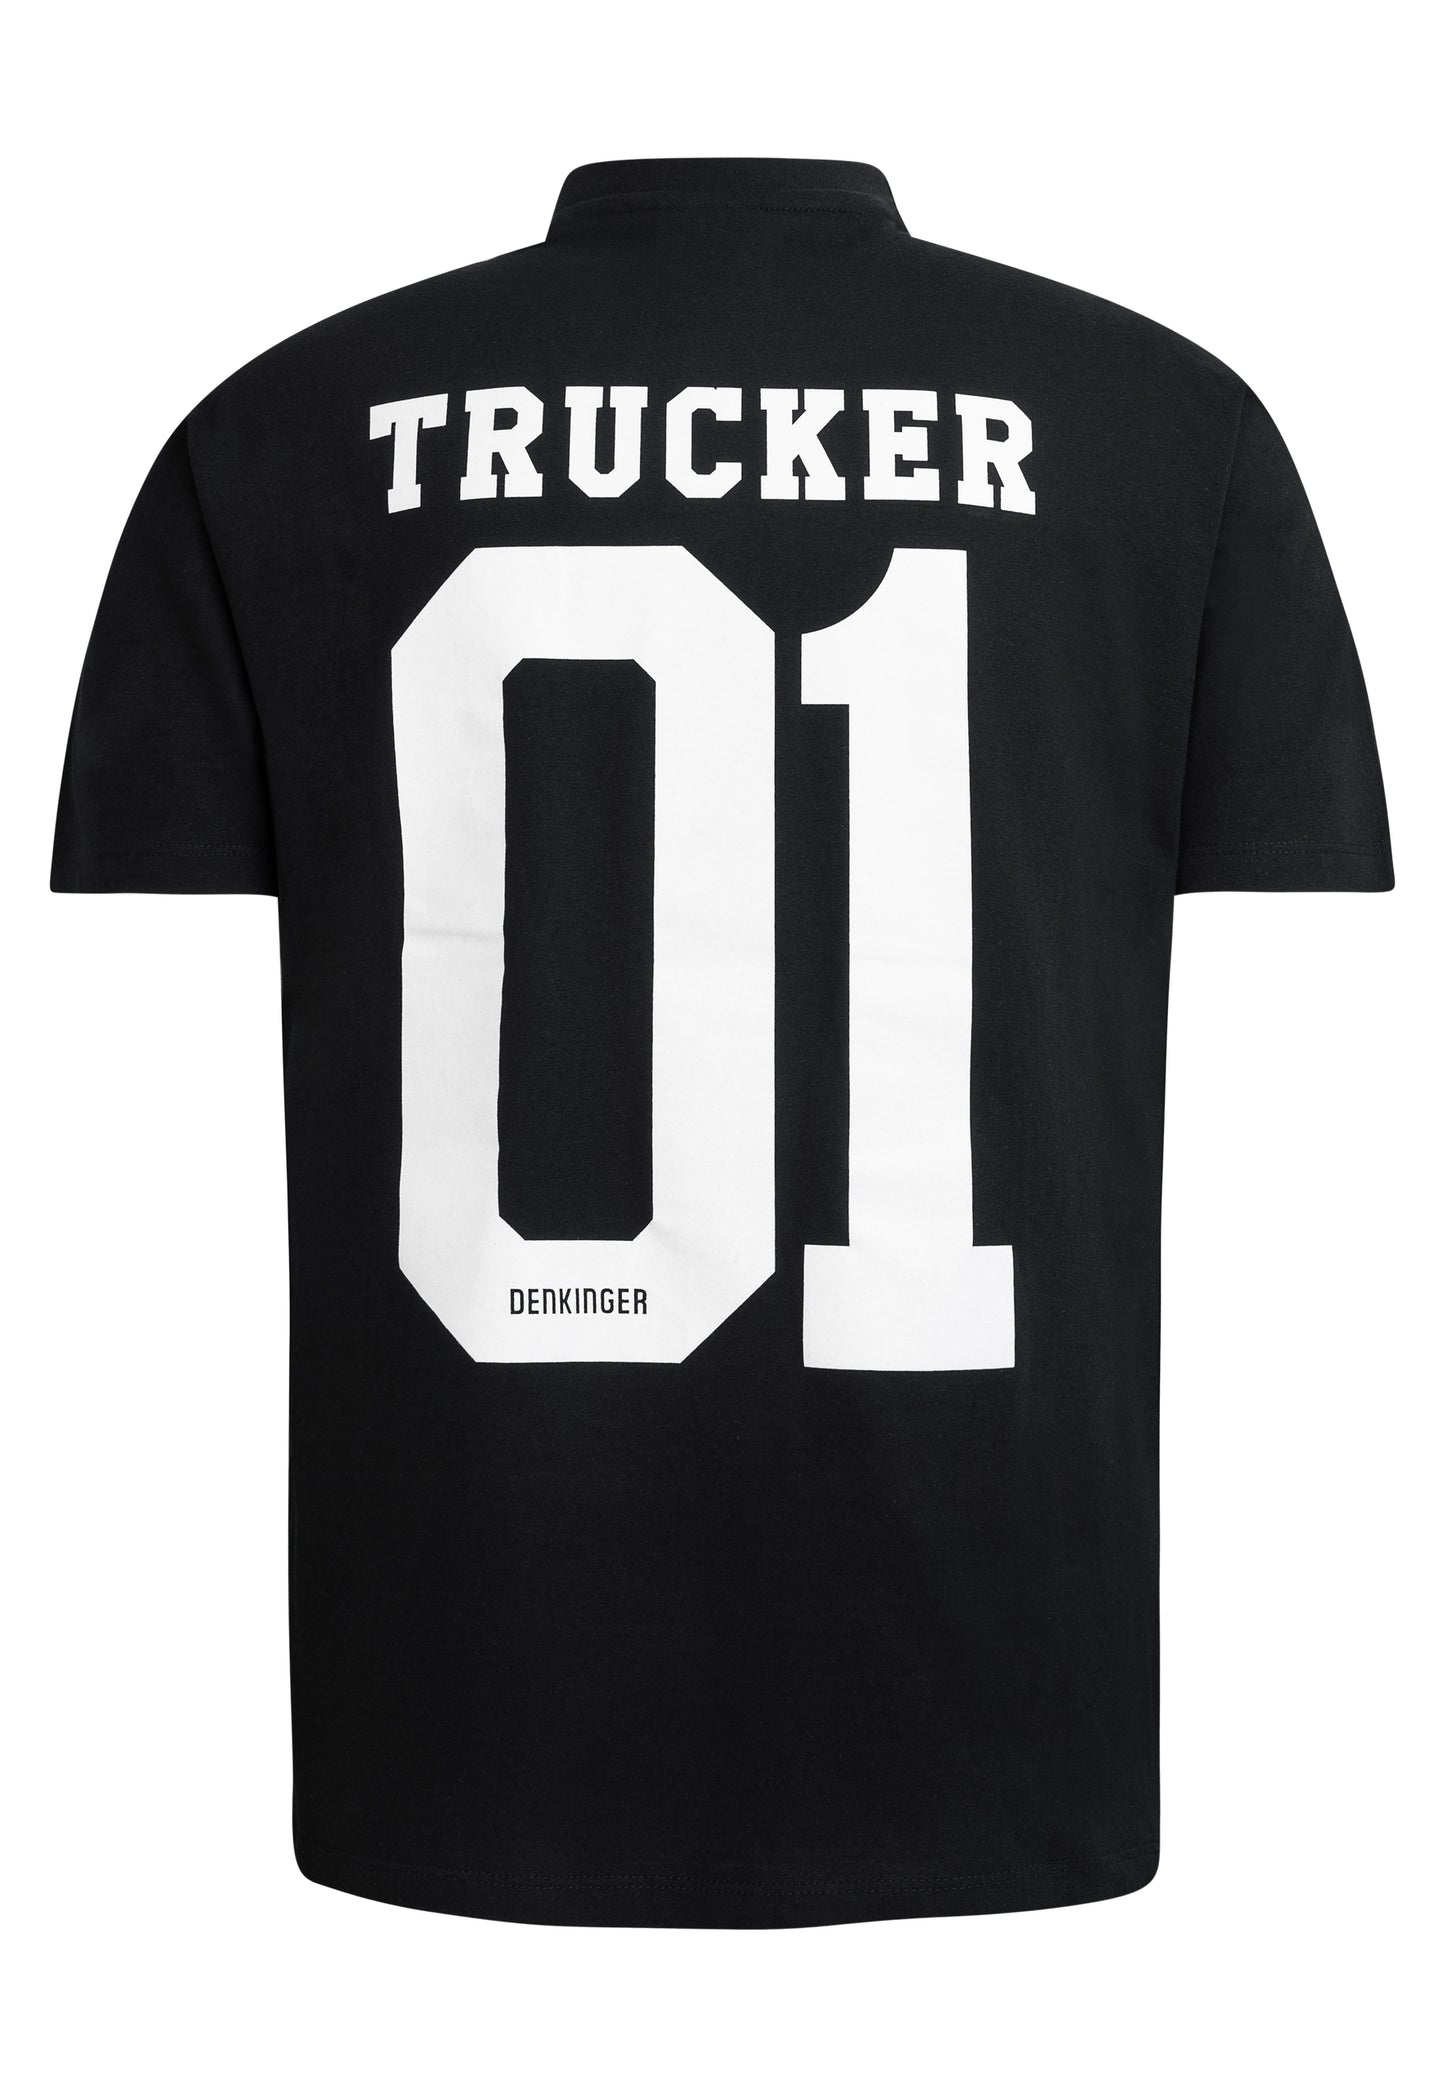 DENKINGER Trucker Shirt Men